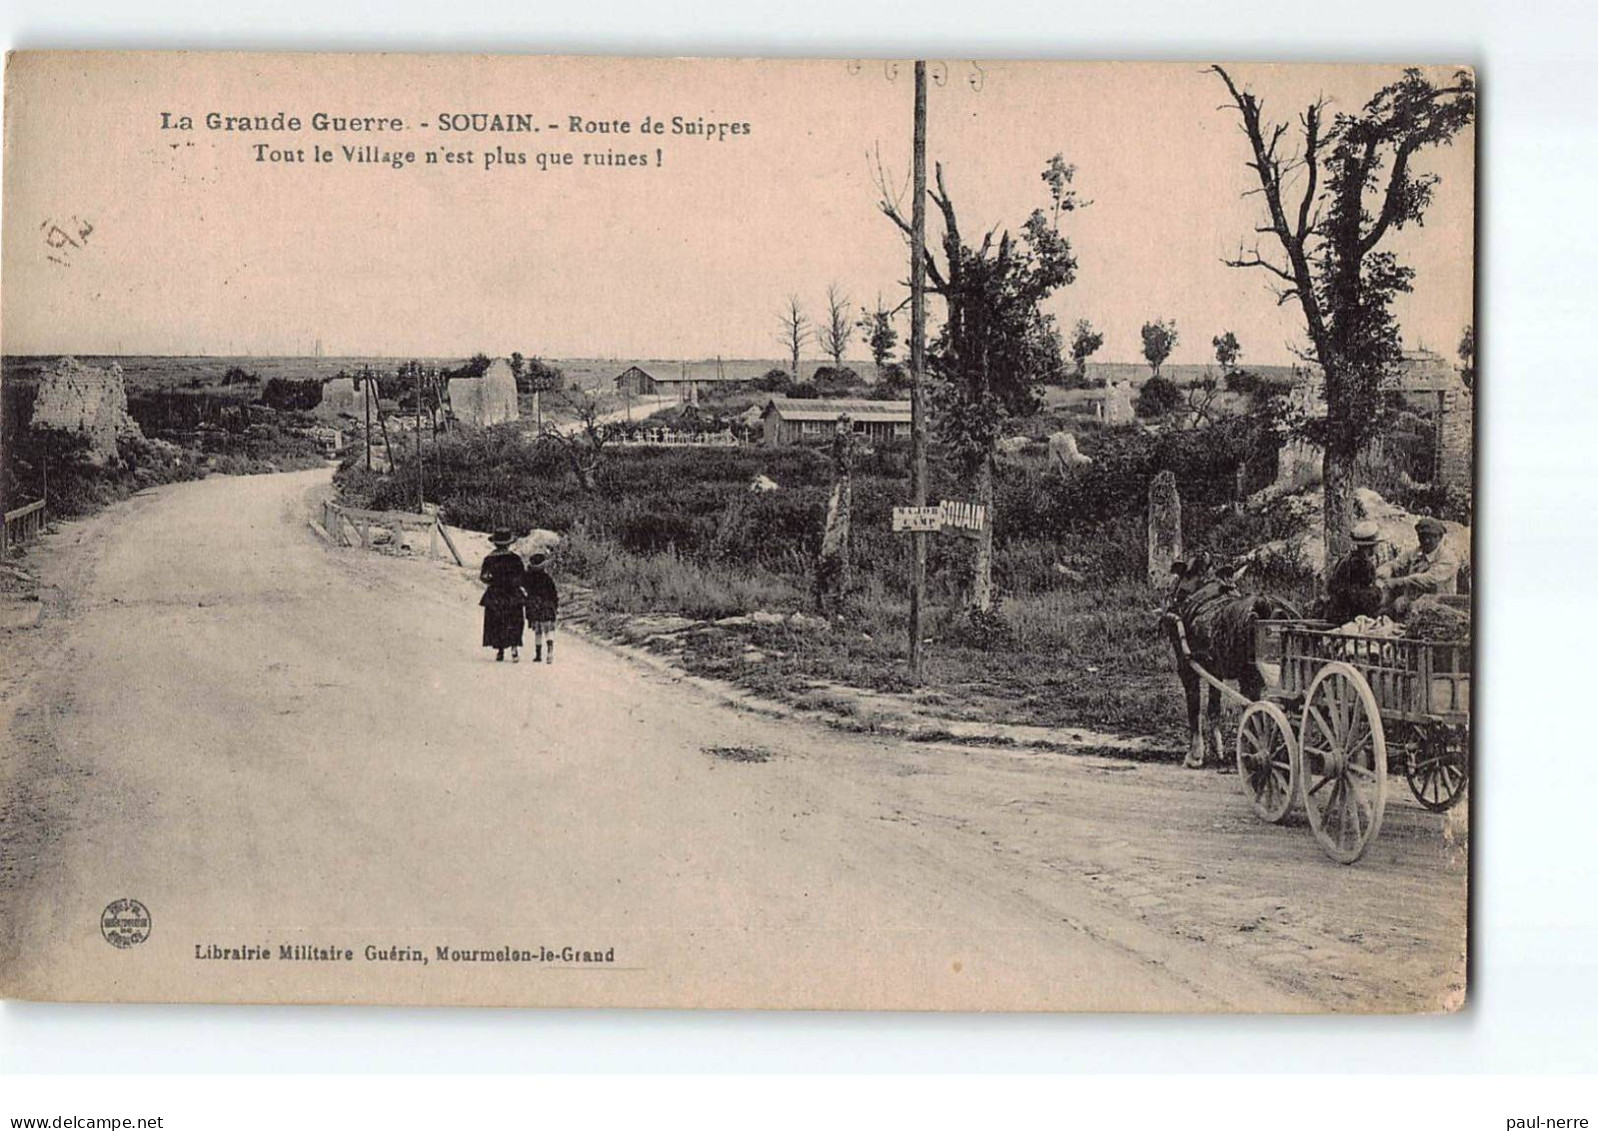 SOUAIN : La Grande Guerre, Route De Suippes, Tout Le Village N'est Plus Que Ruines - Très Bon état - Souain-Perthes-lès-Hurlus